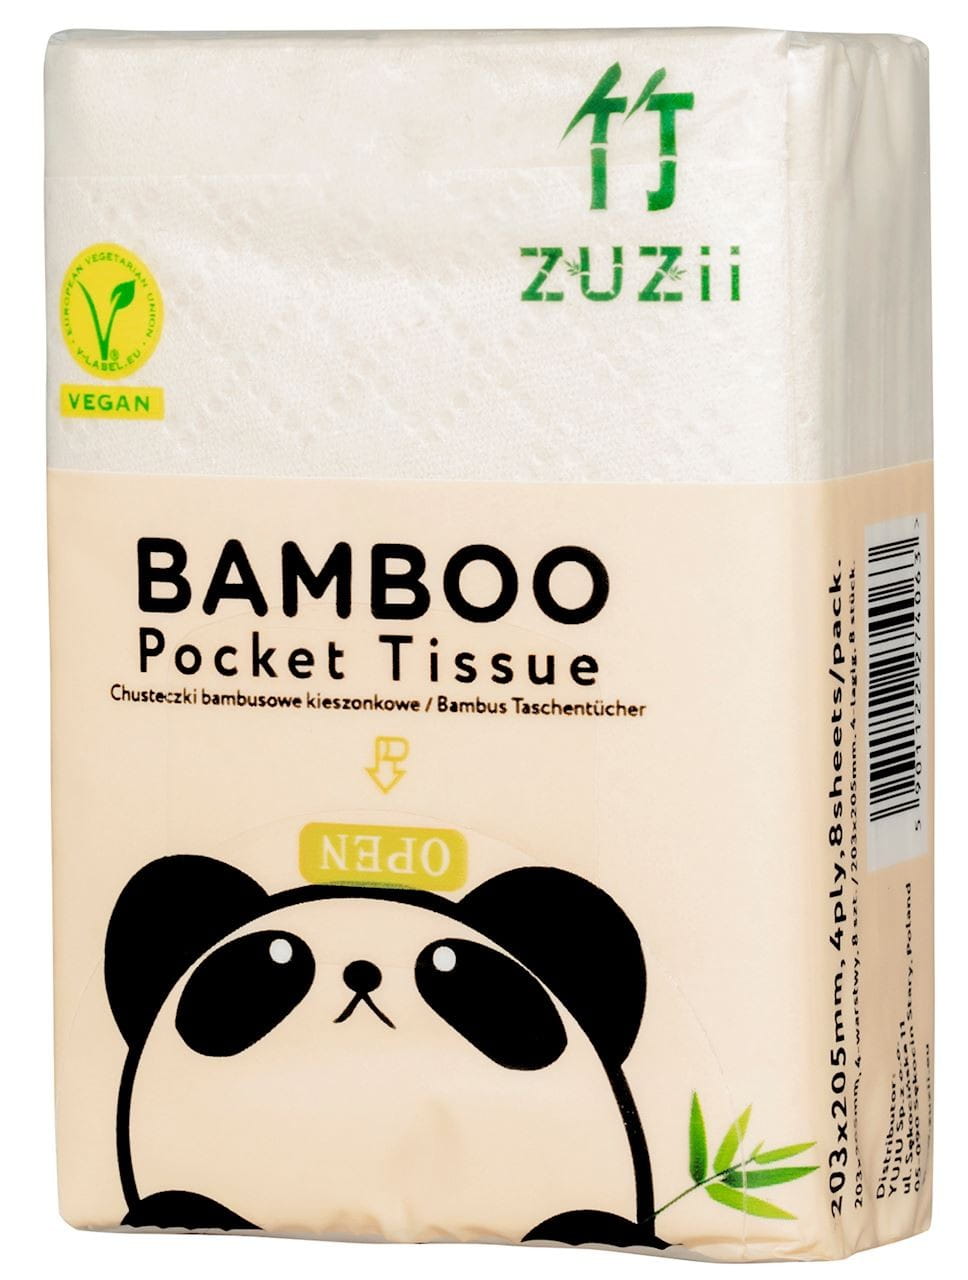 Taschen-Bambustücher 64 Stück (8 Stück x 8) - ZUZII